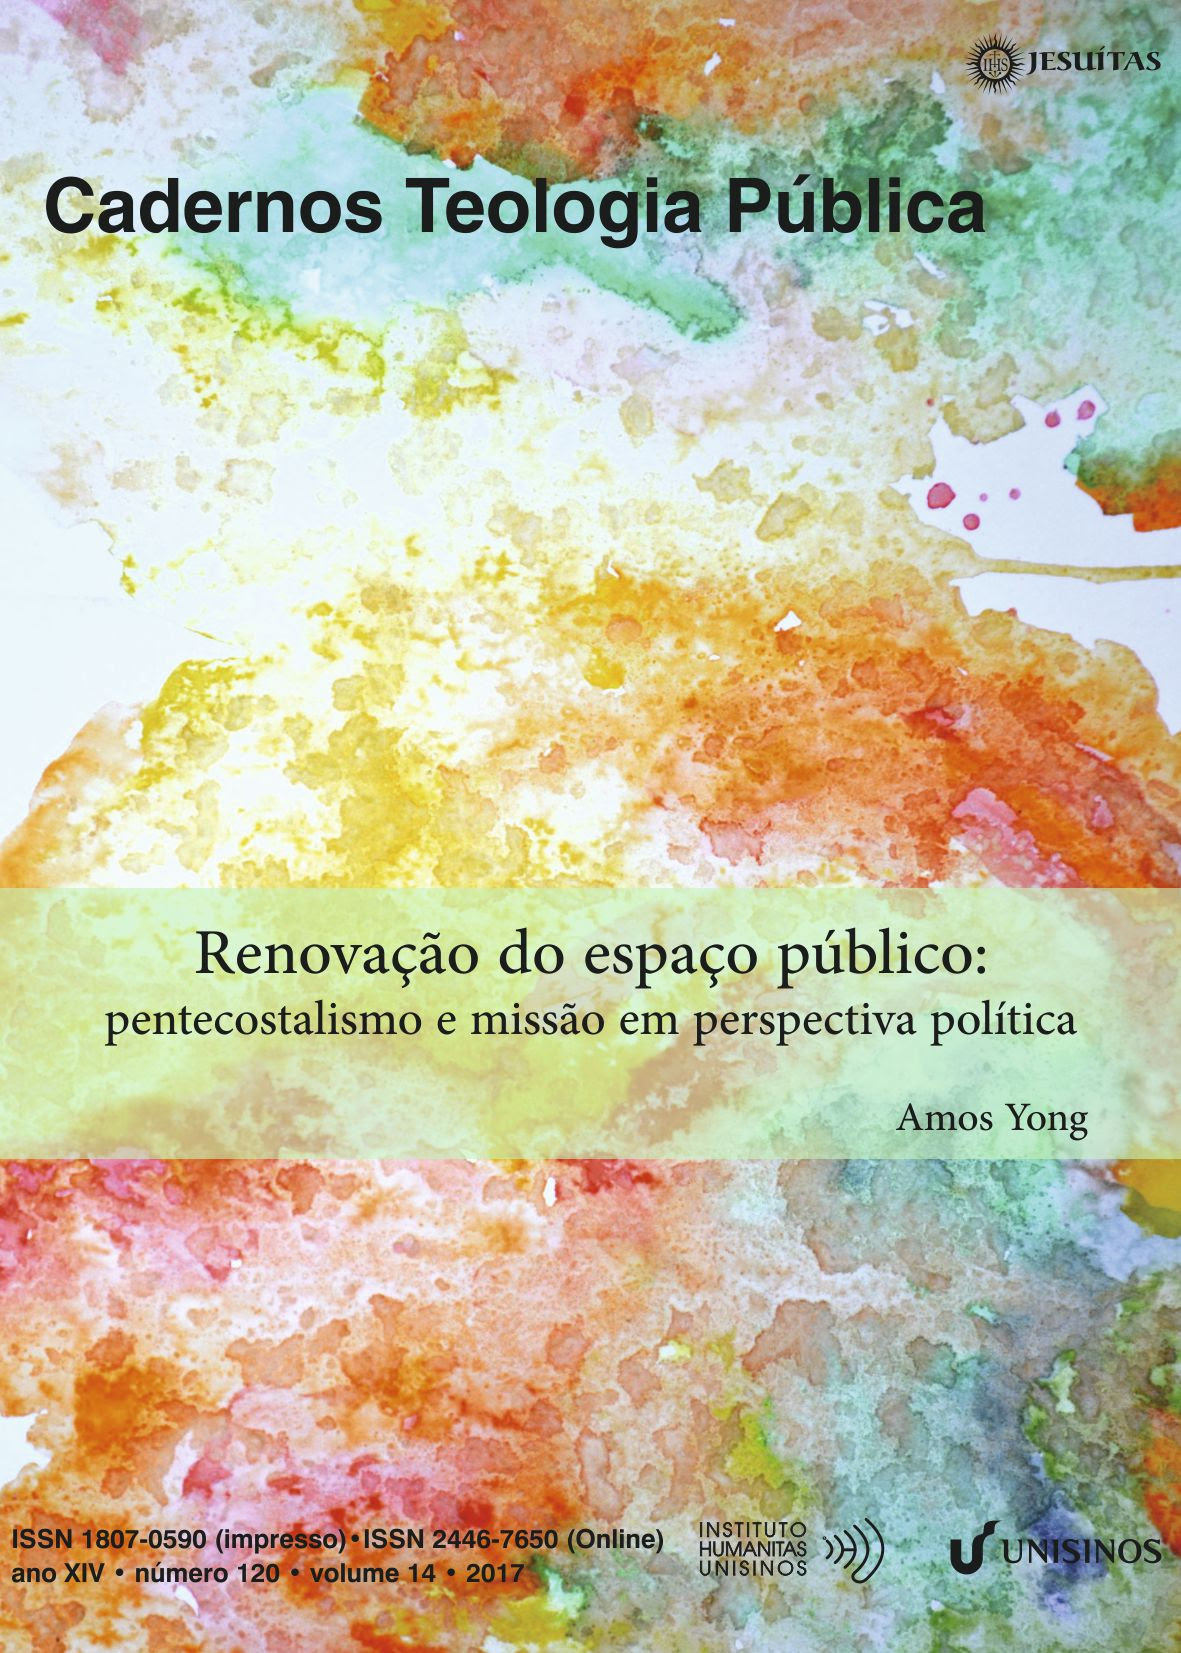 120-Teologia_Publica-renovacao_do_espaco_publicao.jpg